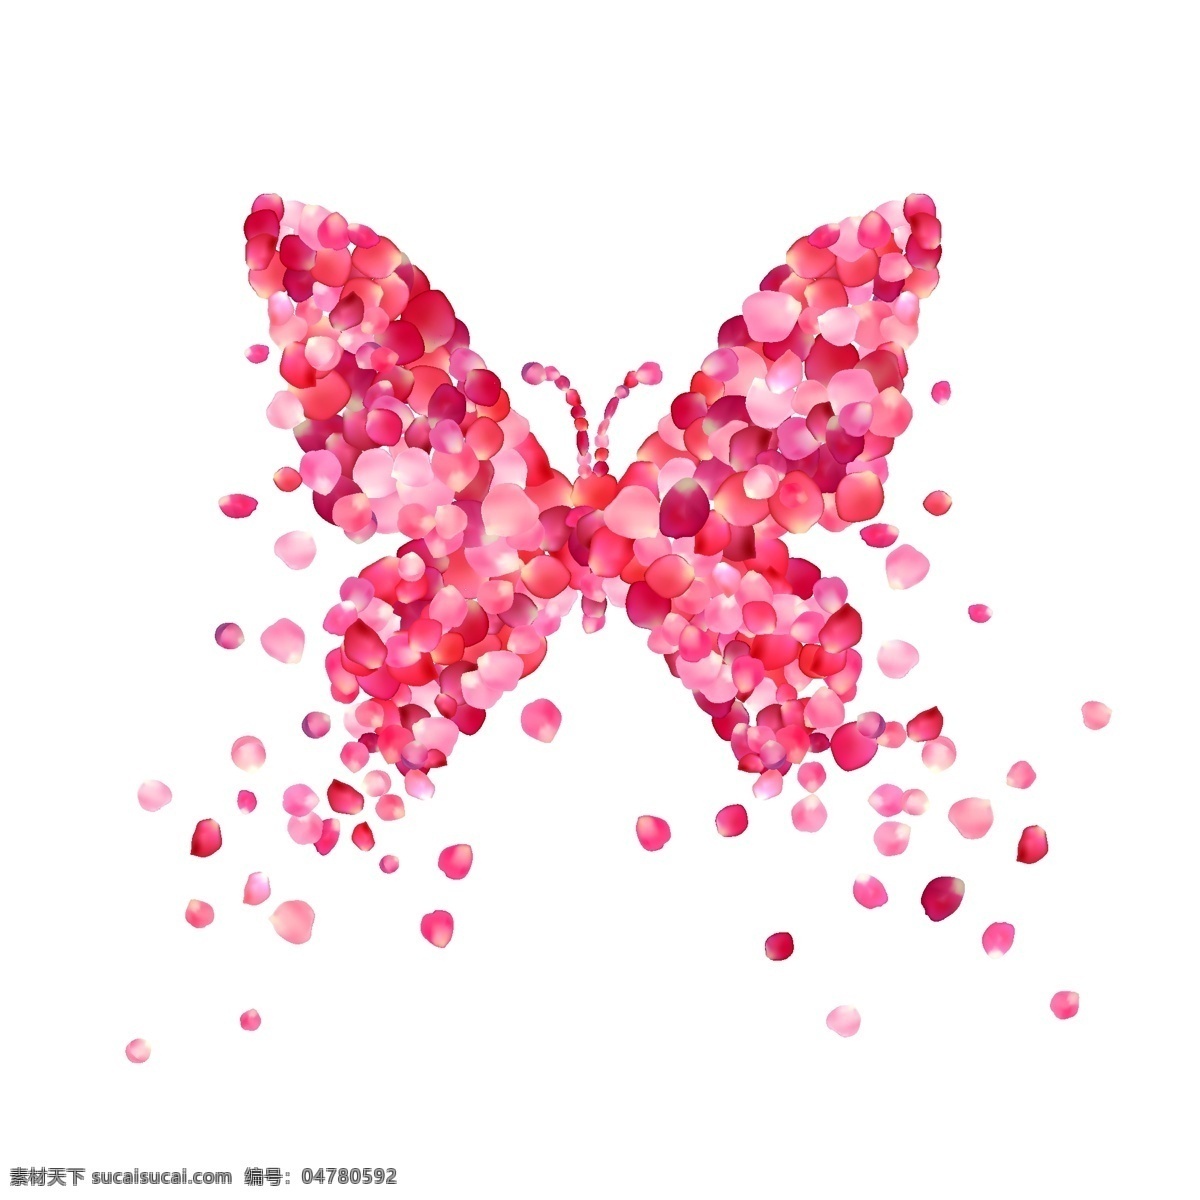 粉色 蝴蝶 矢量 海报 设计素材 动物 玫瑰 手绘 卡通 水彩 插画 创意 婚礼 爱情 装饰